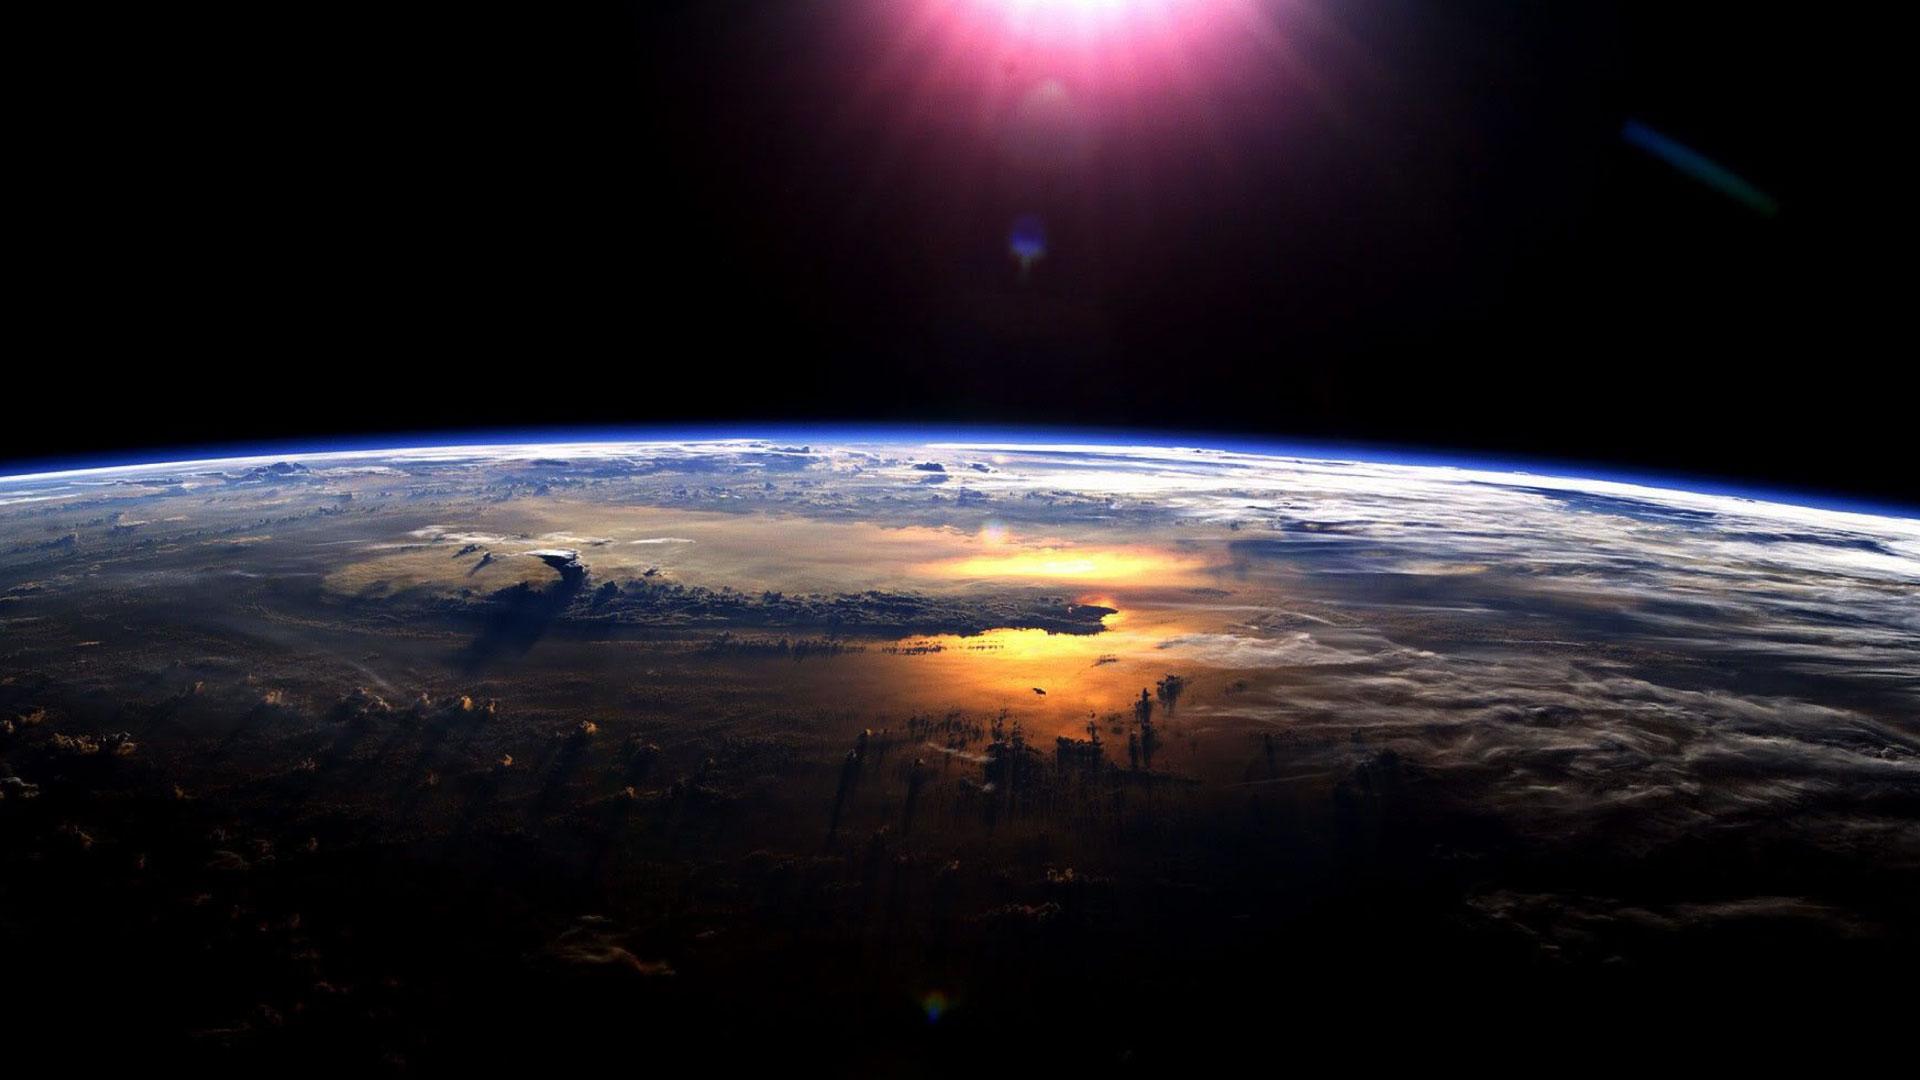 Sunrise over the Earth